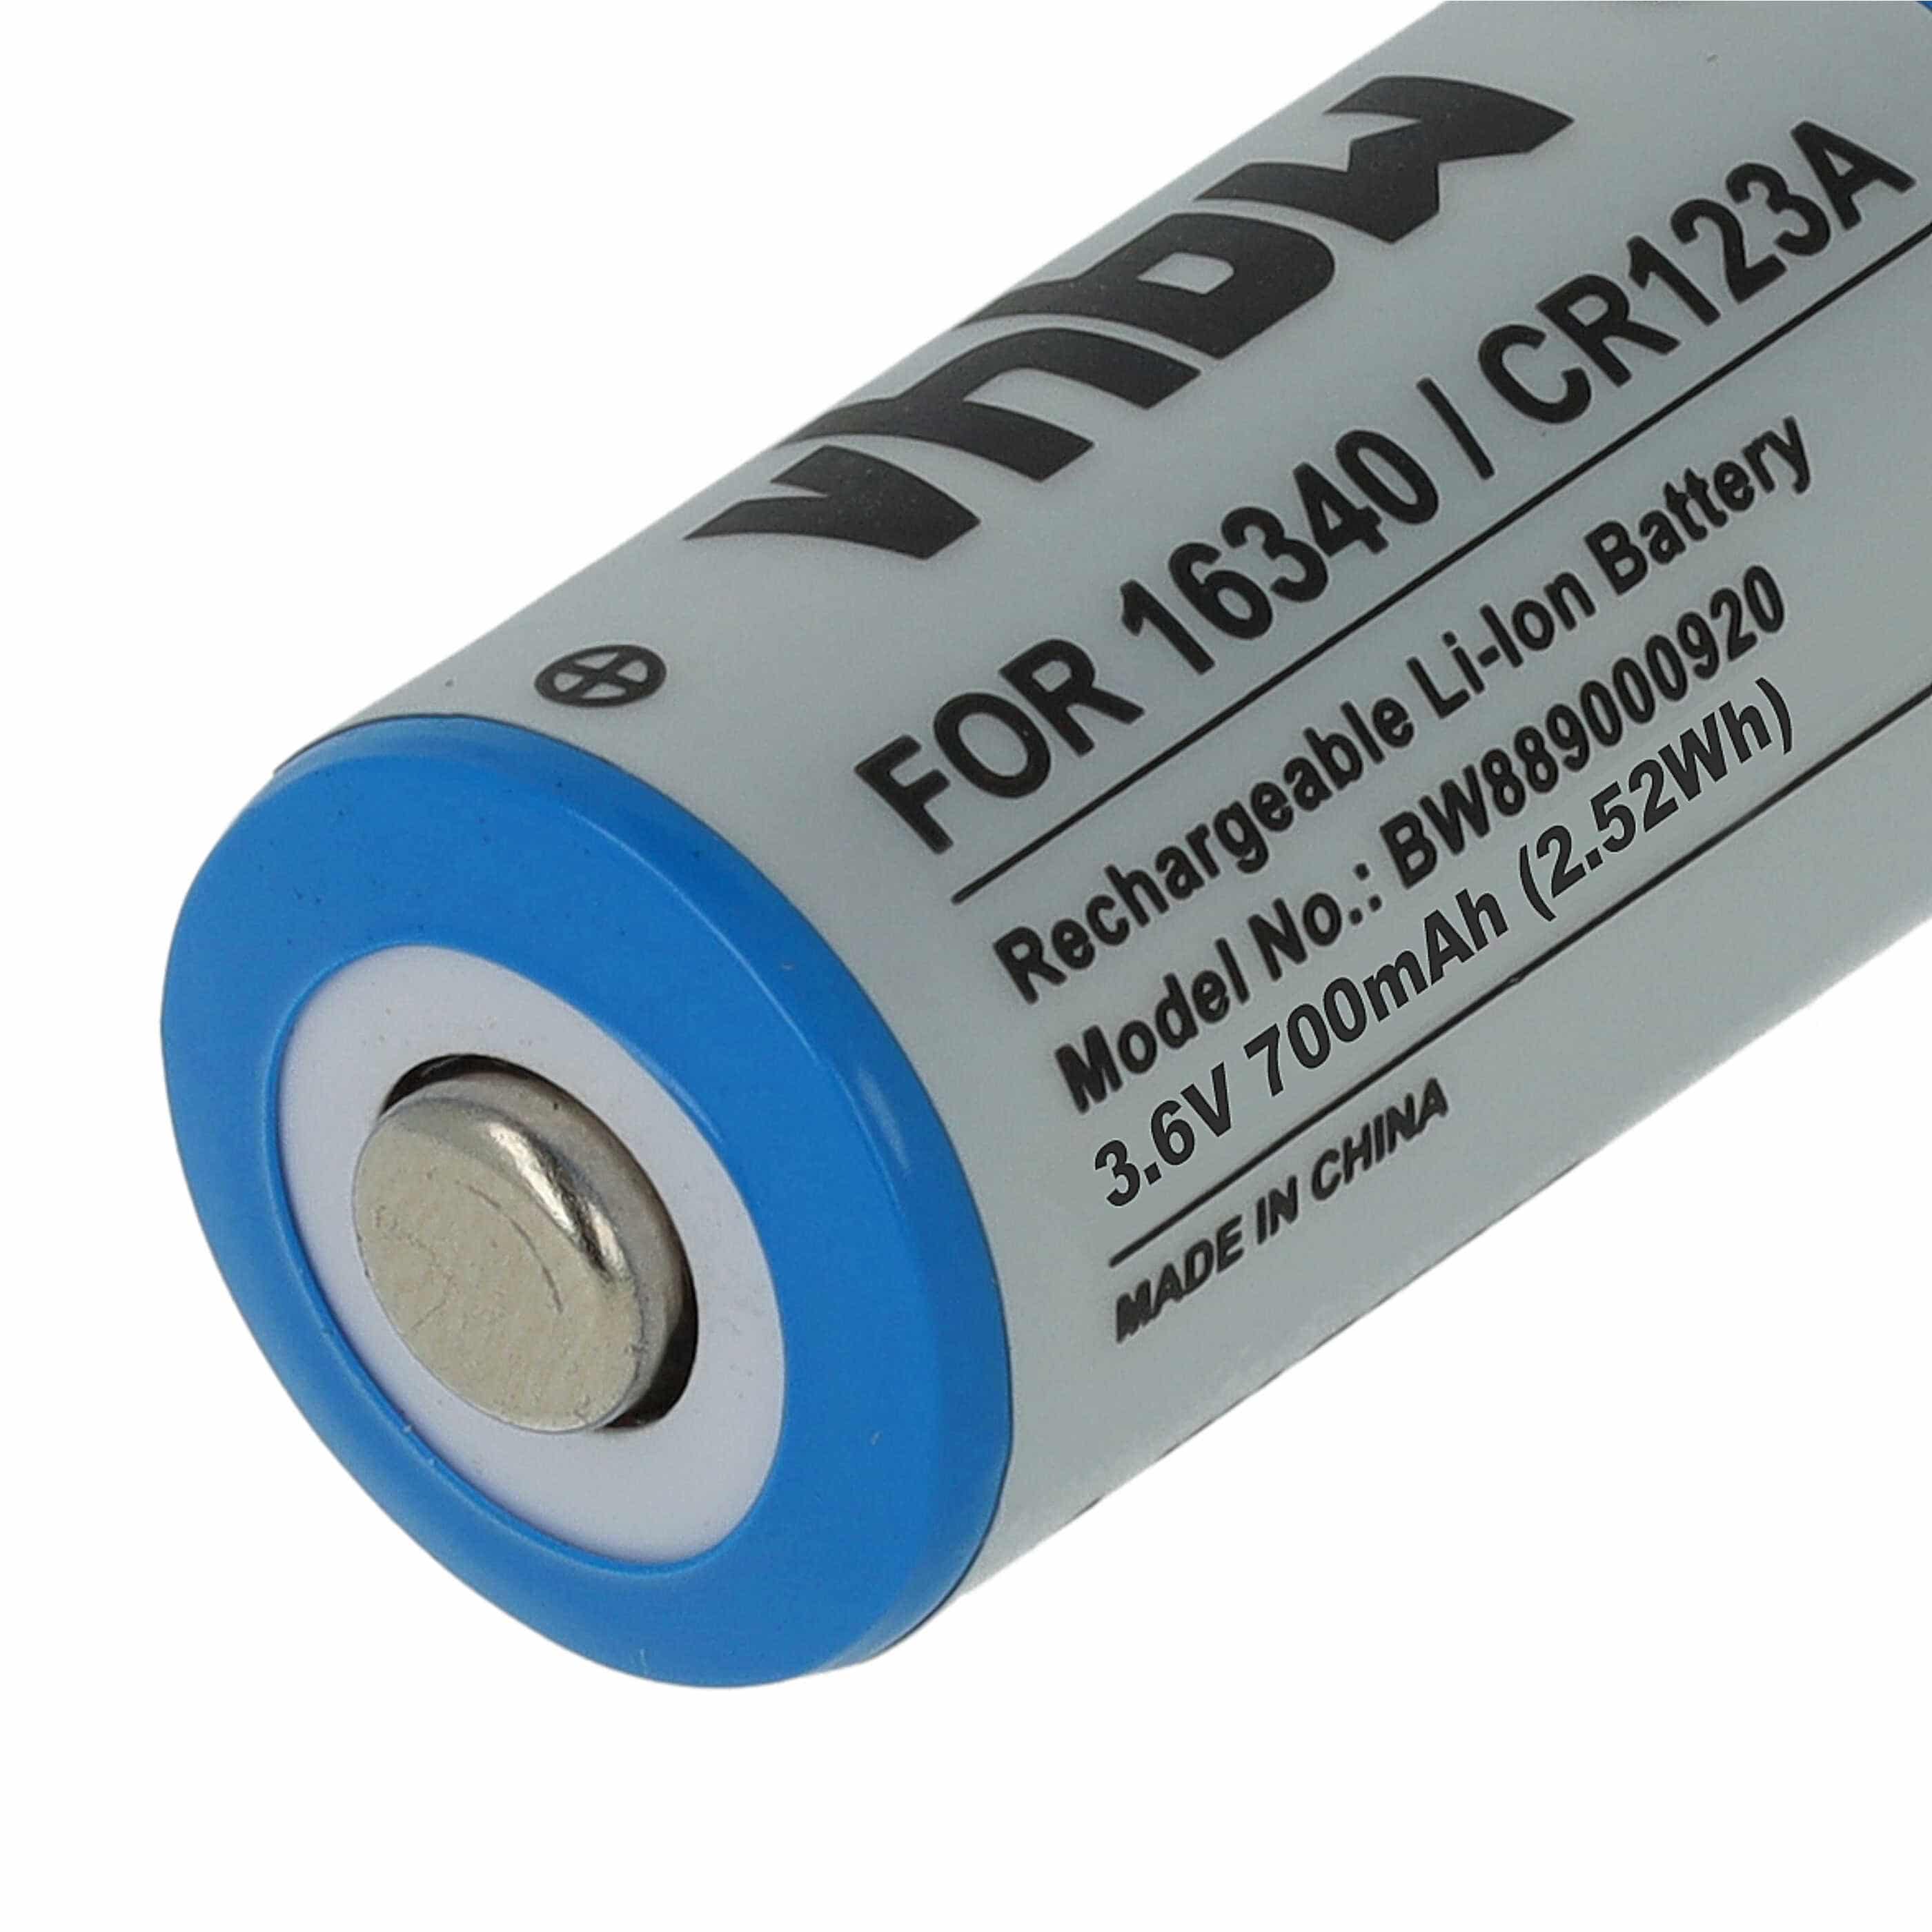 Akumulator zamiennik 16340, DL123A, CR123R, CR17335, CR17345, CR123A - 700 mAh 3,6 V Li-Ion, 1x ogniwo